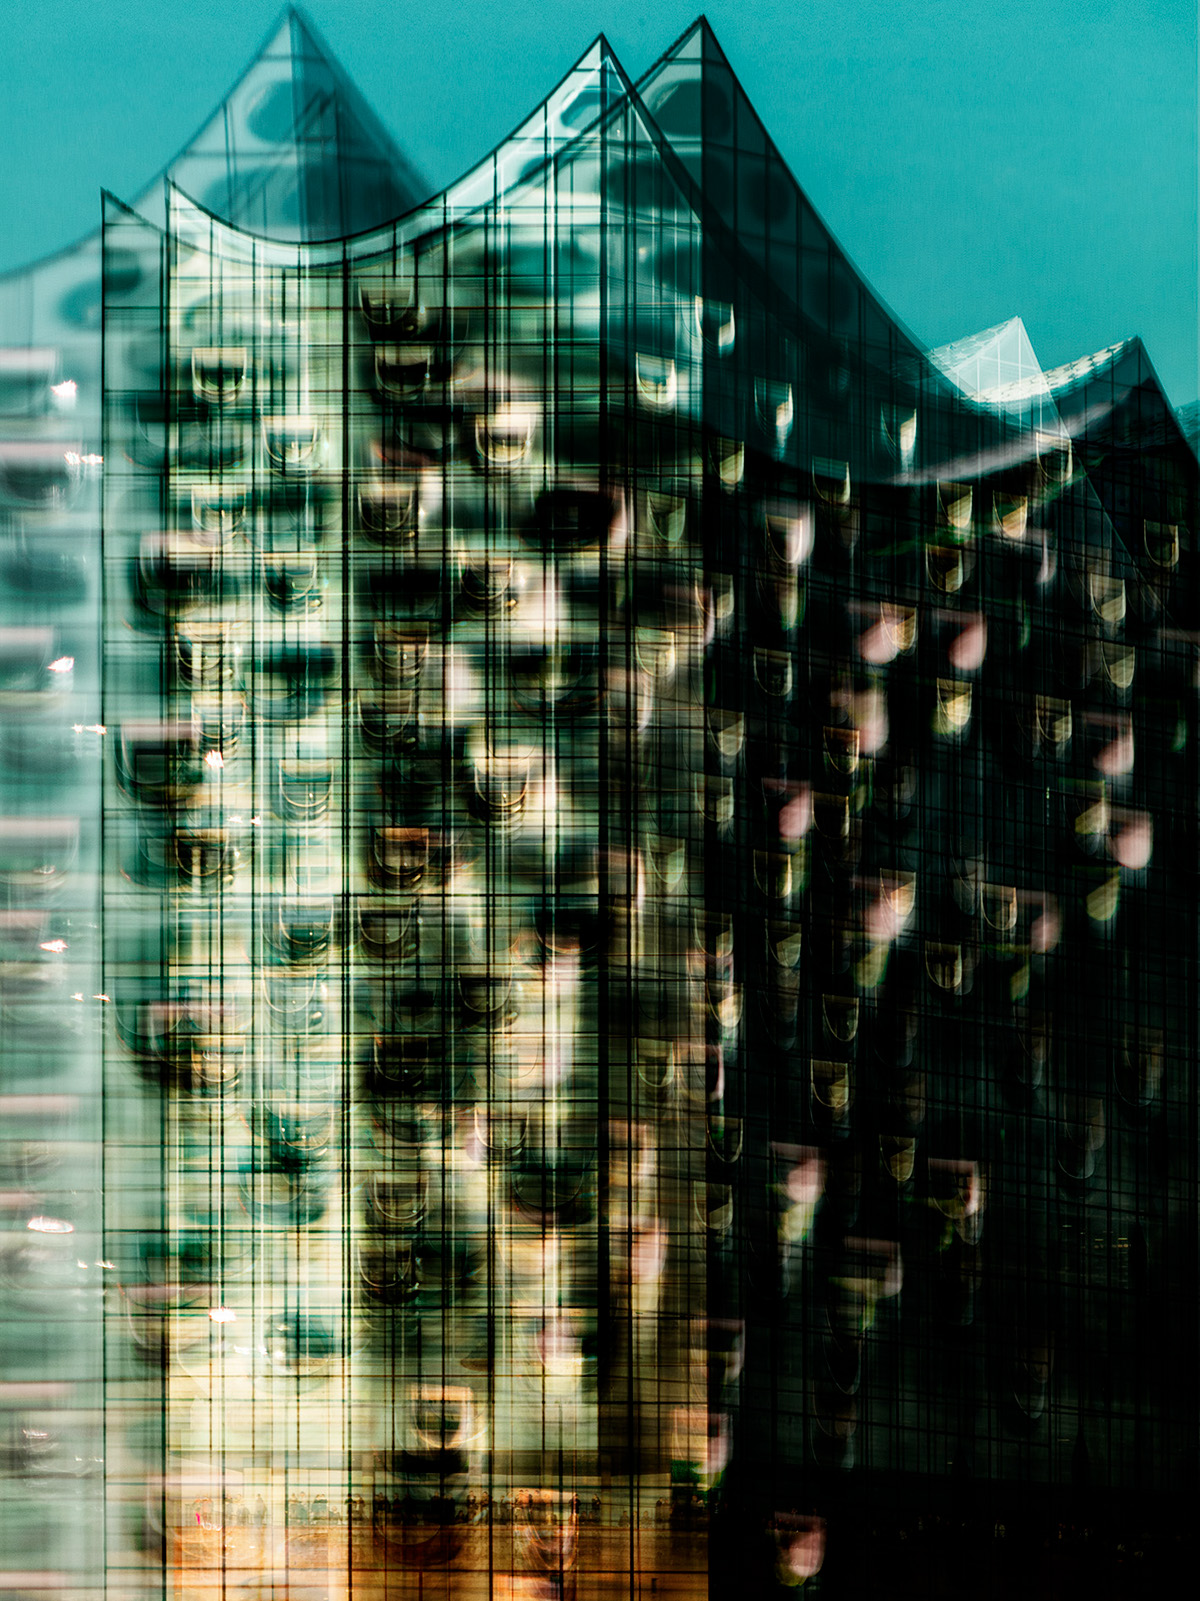 elbphilharmonie hamburg deconstruction architecture fractals BerlinerBogen marcopolo chilehaus teherani